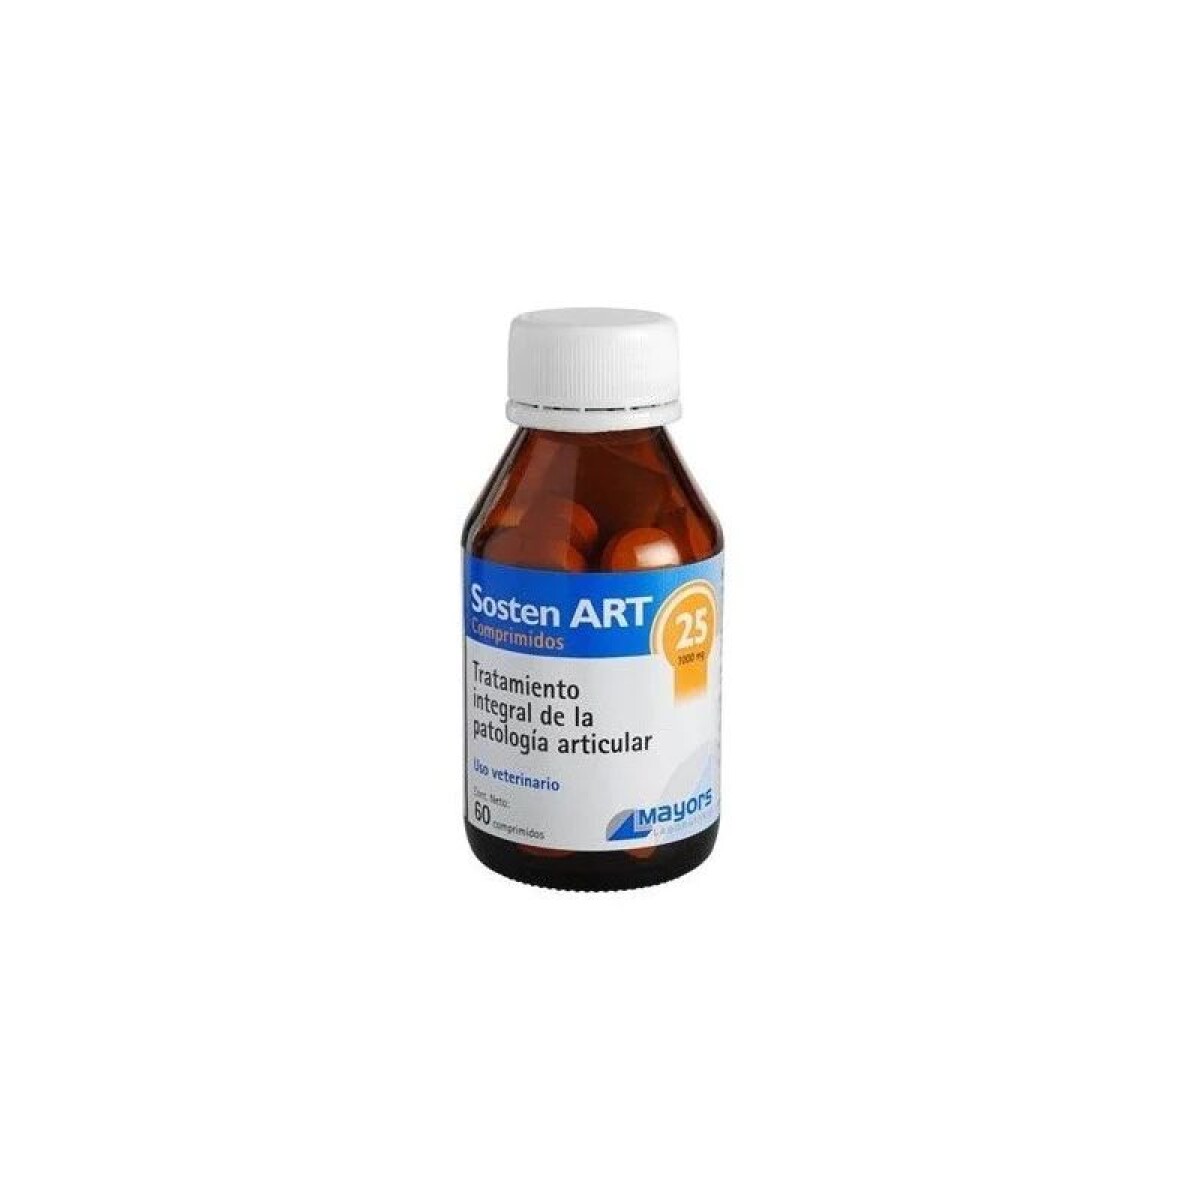 SOSTEN ART 25 (60 COMPRIMIDOS) - Sosten Art 25 (60 Comprimidos) 